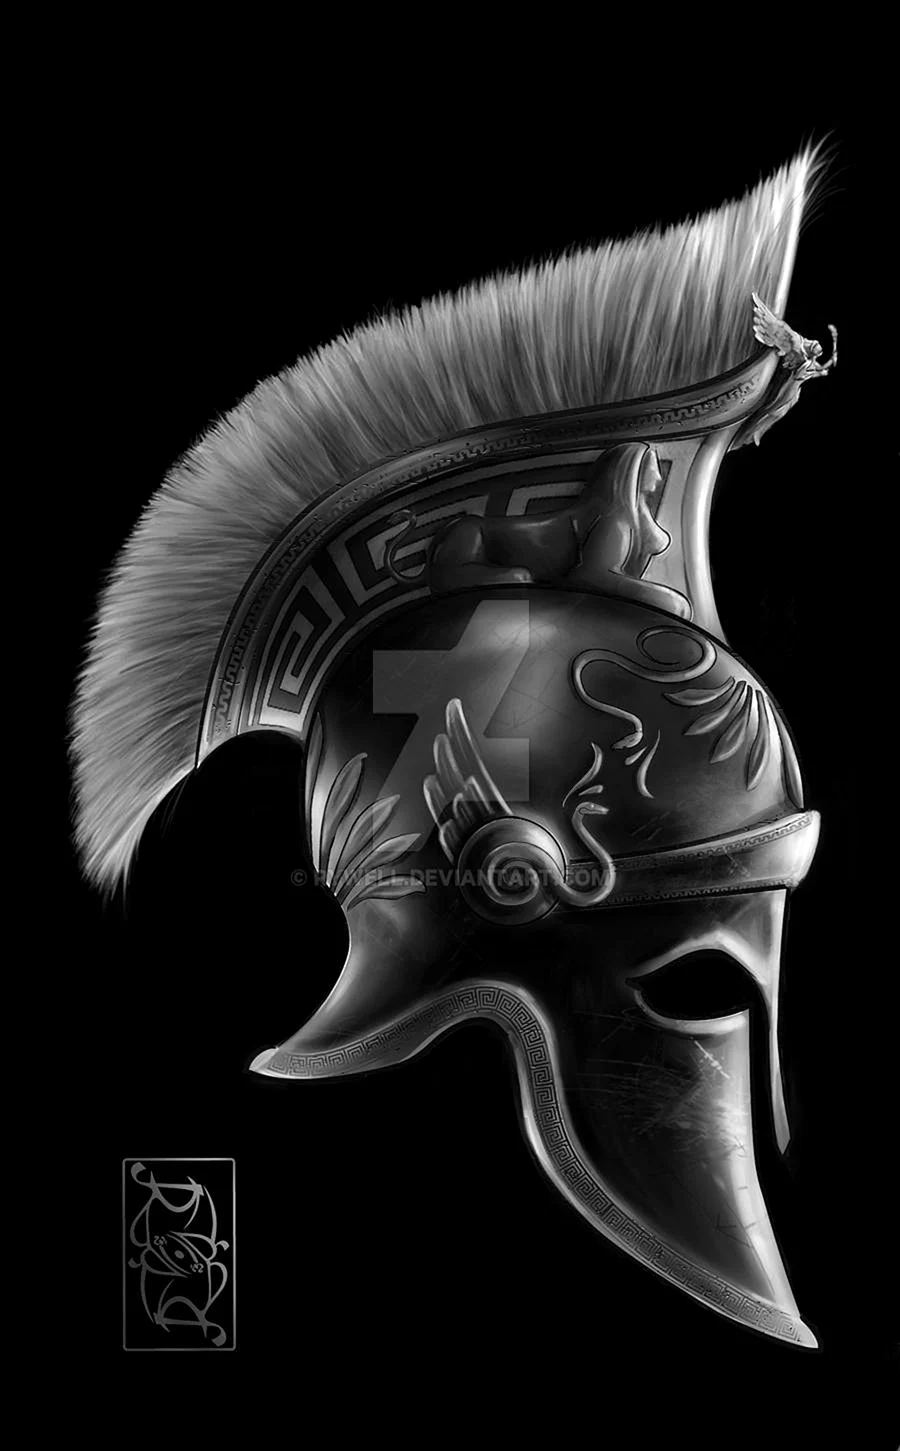 Spartan Helmet drawing